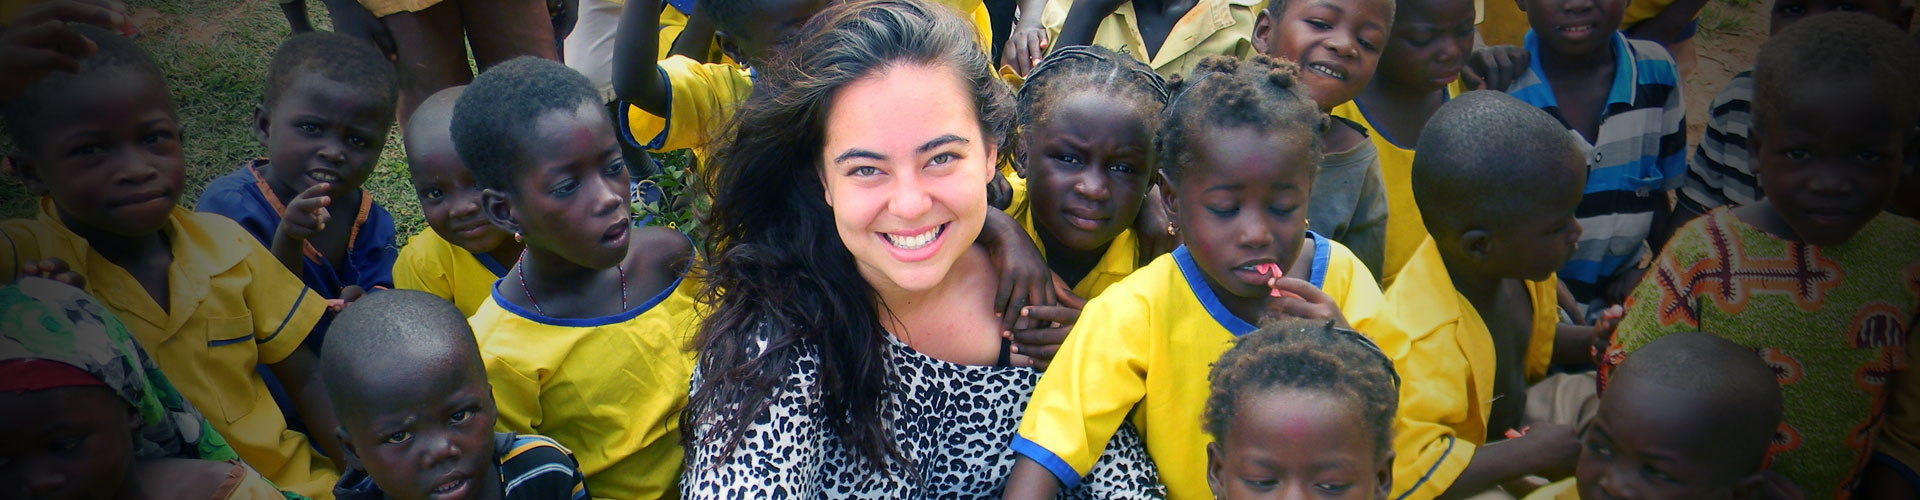 Programa de voluntariado de orfanato en Ghana